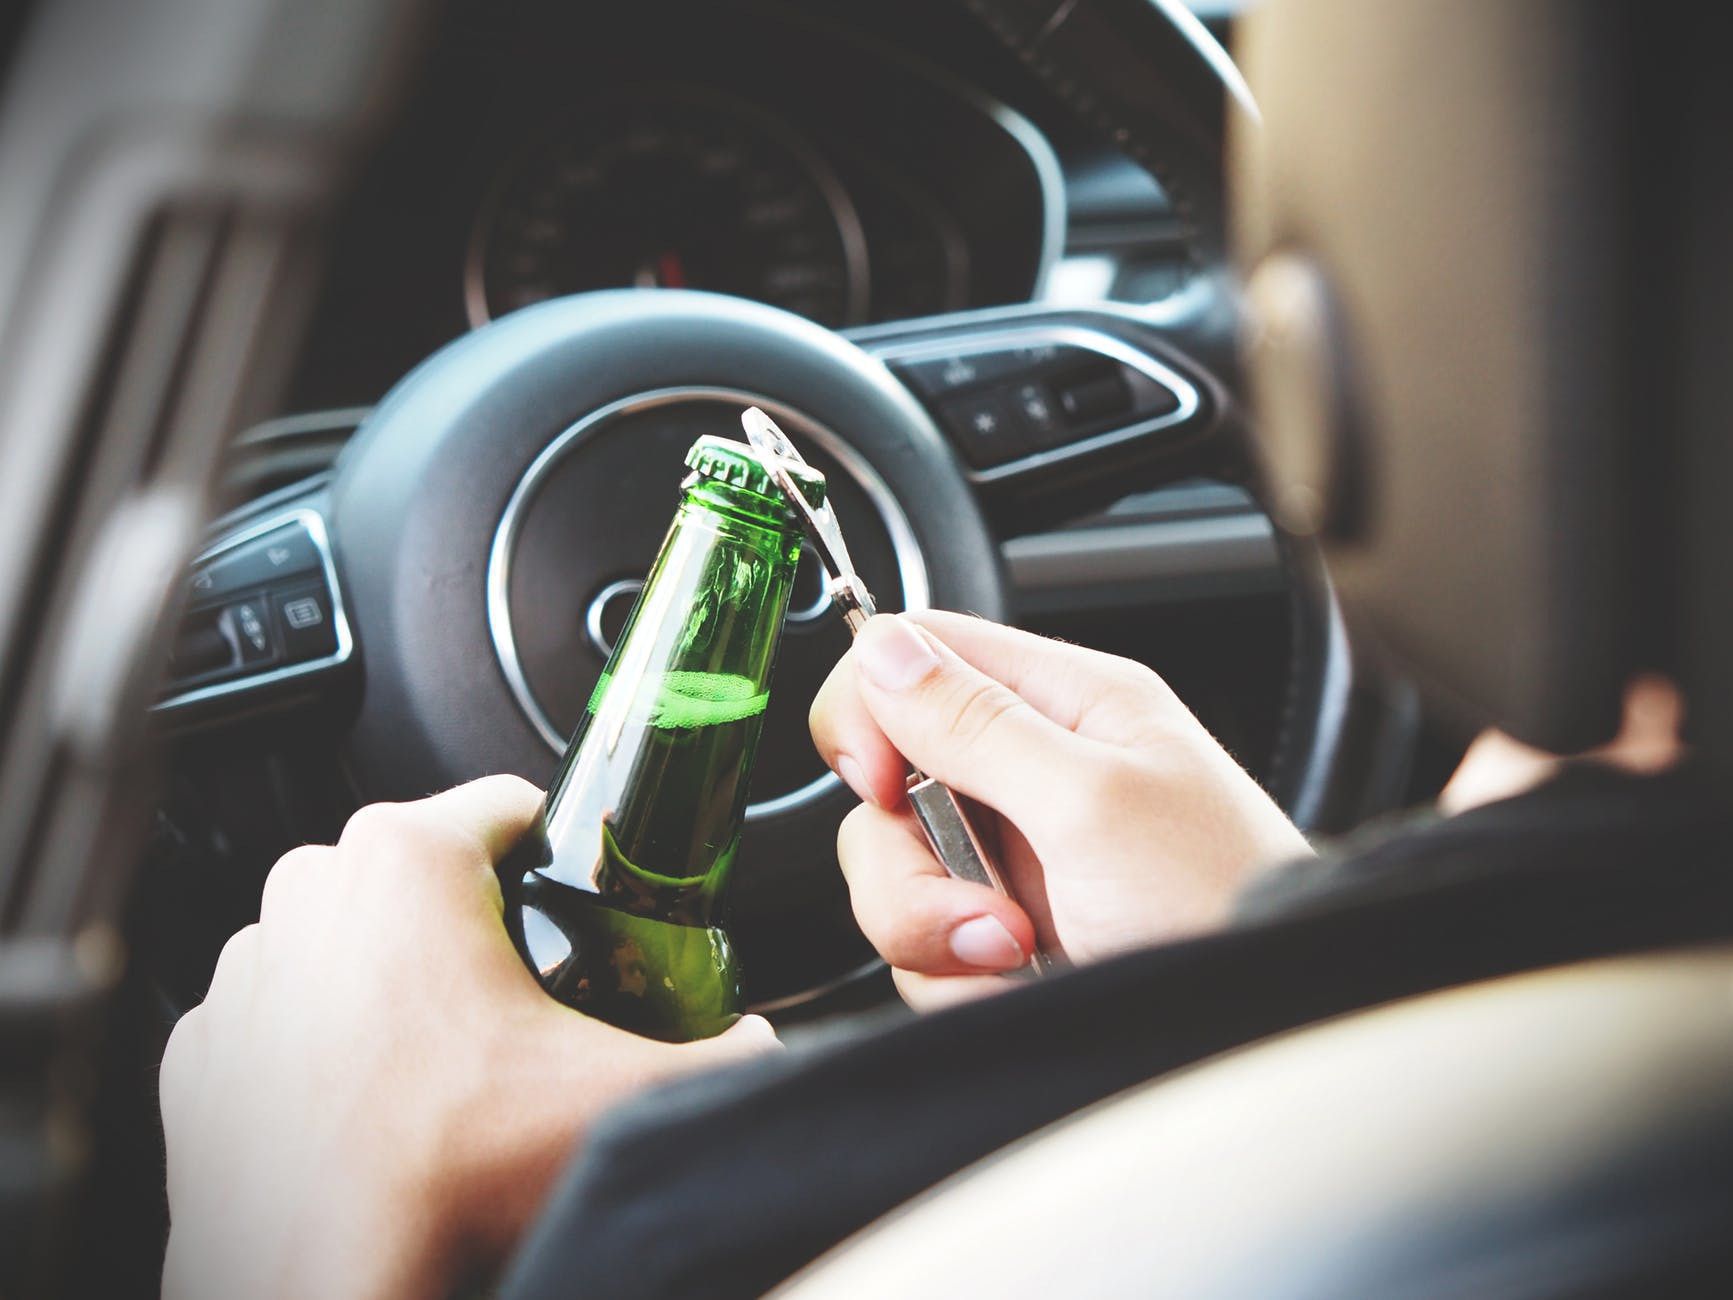 В Україні перенесли збільшення штрафів для п'яних водіїв. Кримінальну відповідальність за нетверезе водіння перенесли на літо.